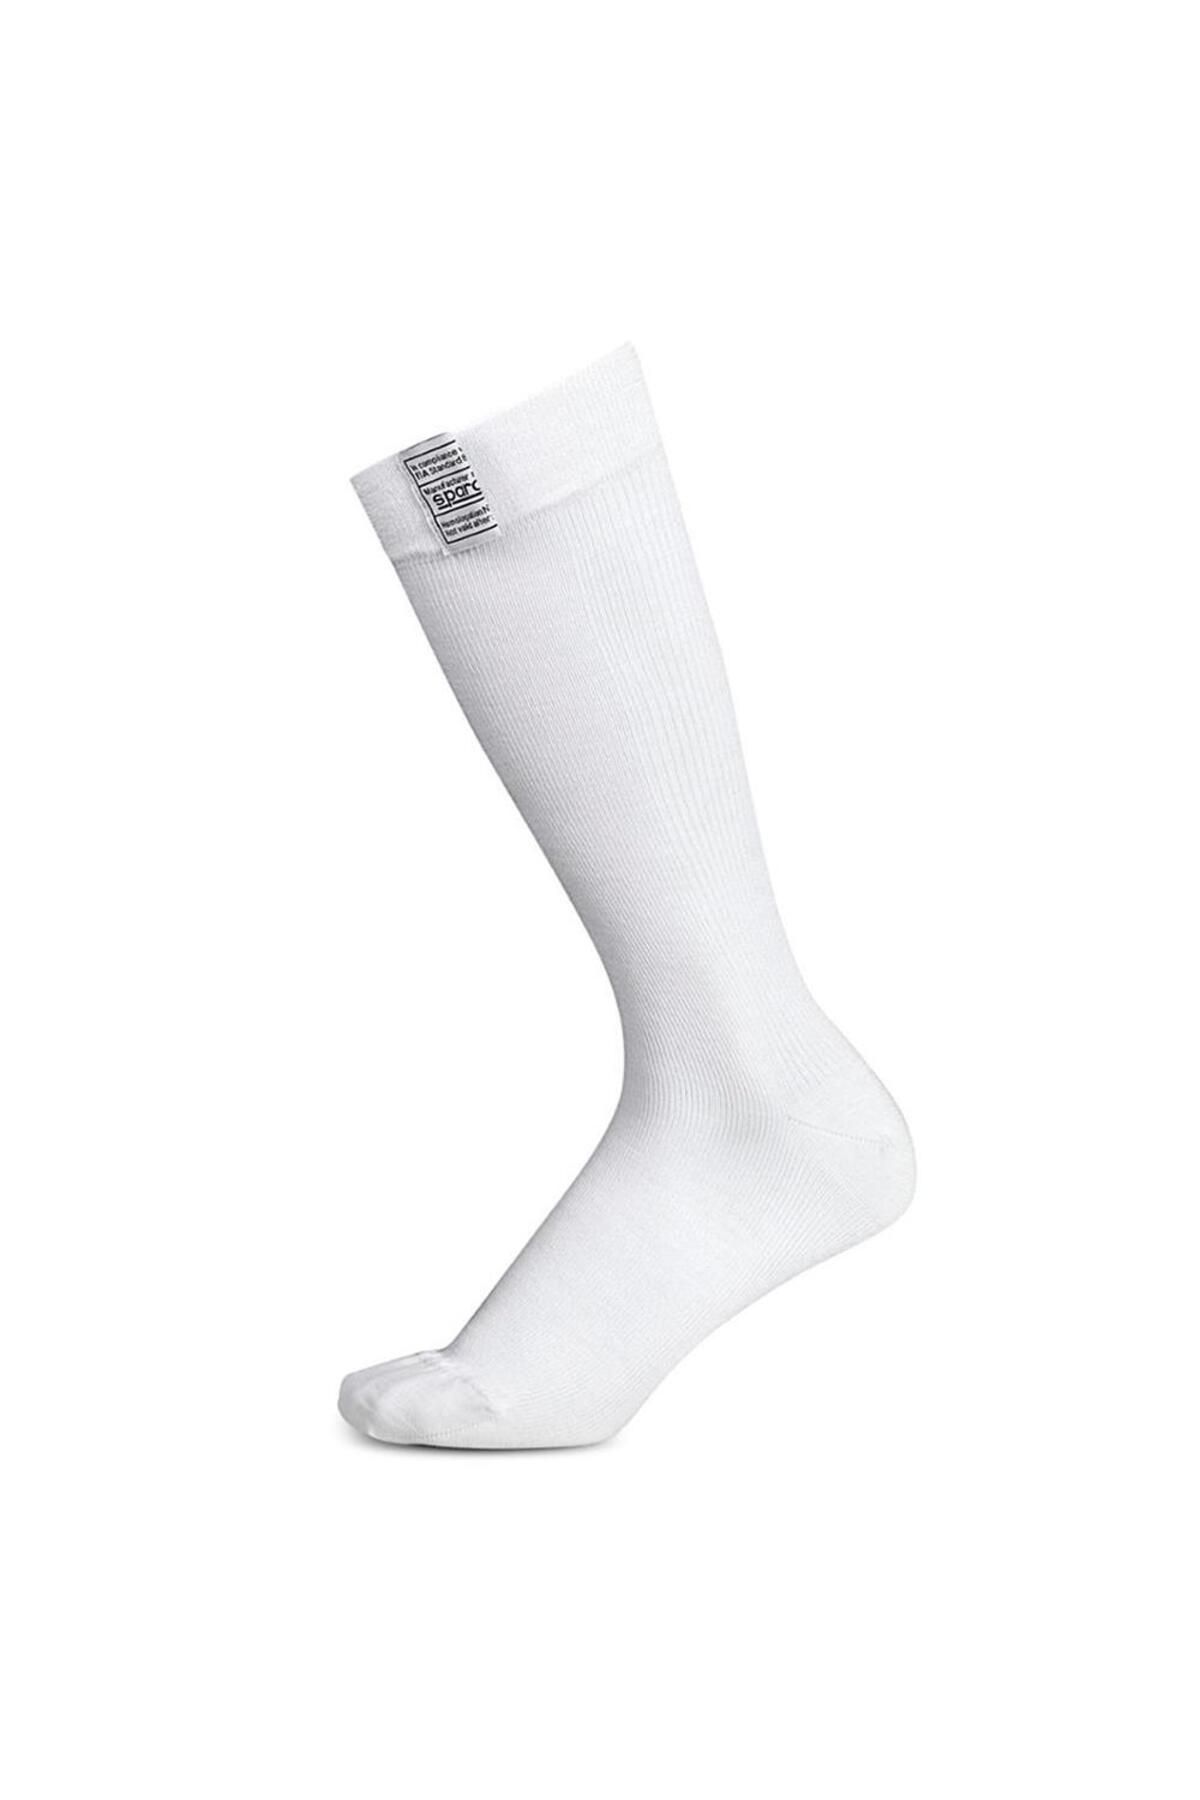 Sparco Çorap Beyaz RW7 R560 SZ 40/41